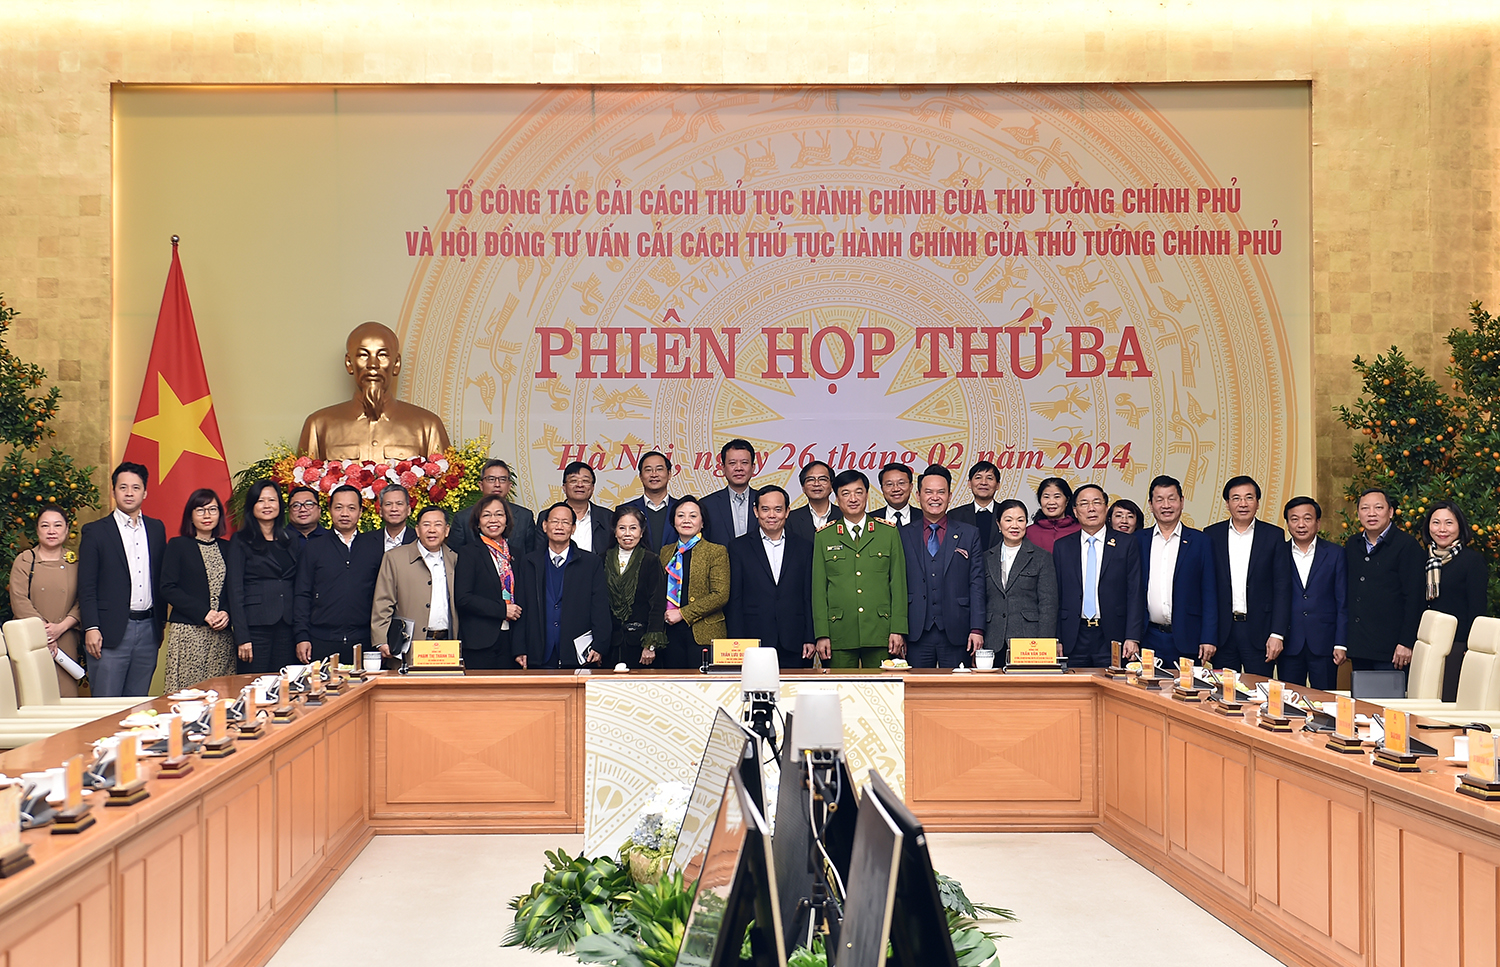 Ra mắt Hội đồng tư vấn cải cách TTHC của Thủ tướng Chính phủ - Ảnh: VGP/Hải Minh